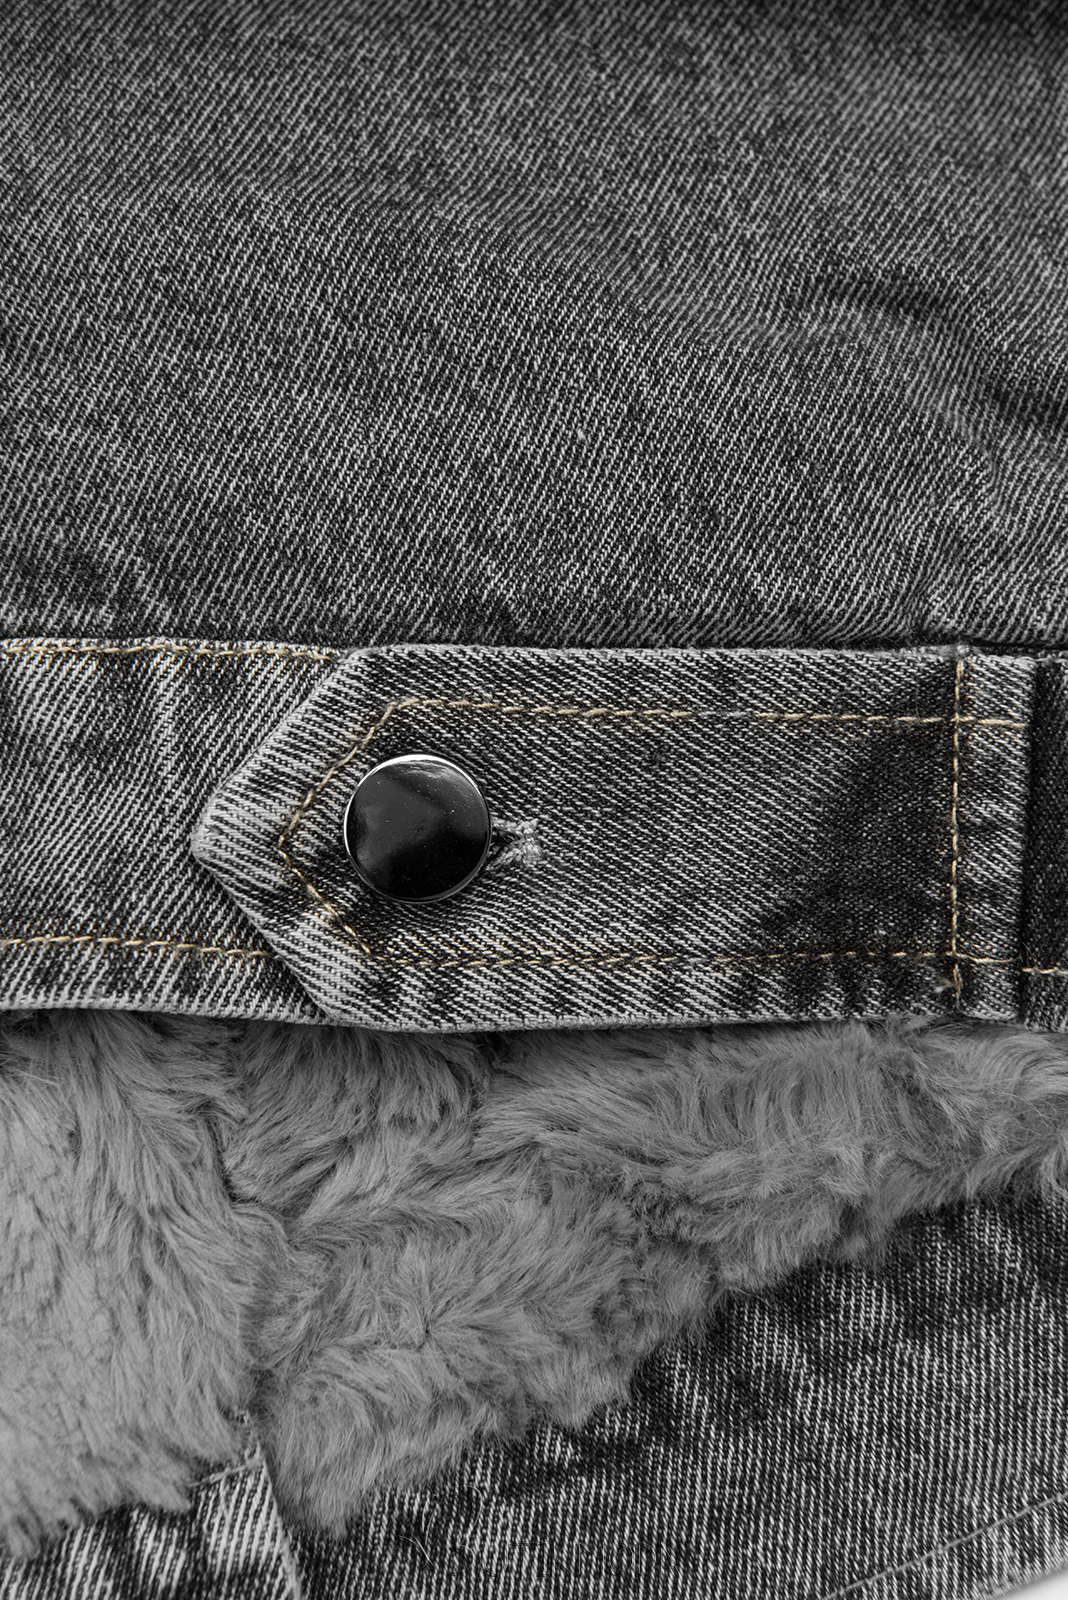 Jeansjacke mit kuscheligem Fellimitat grau/grau